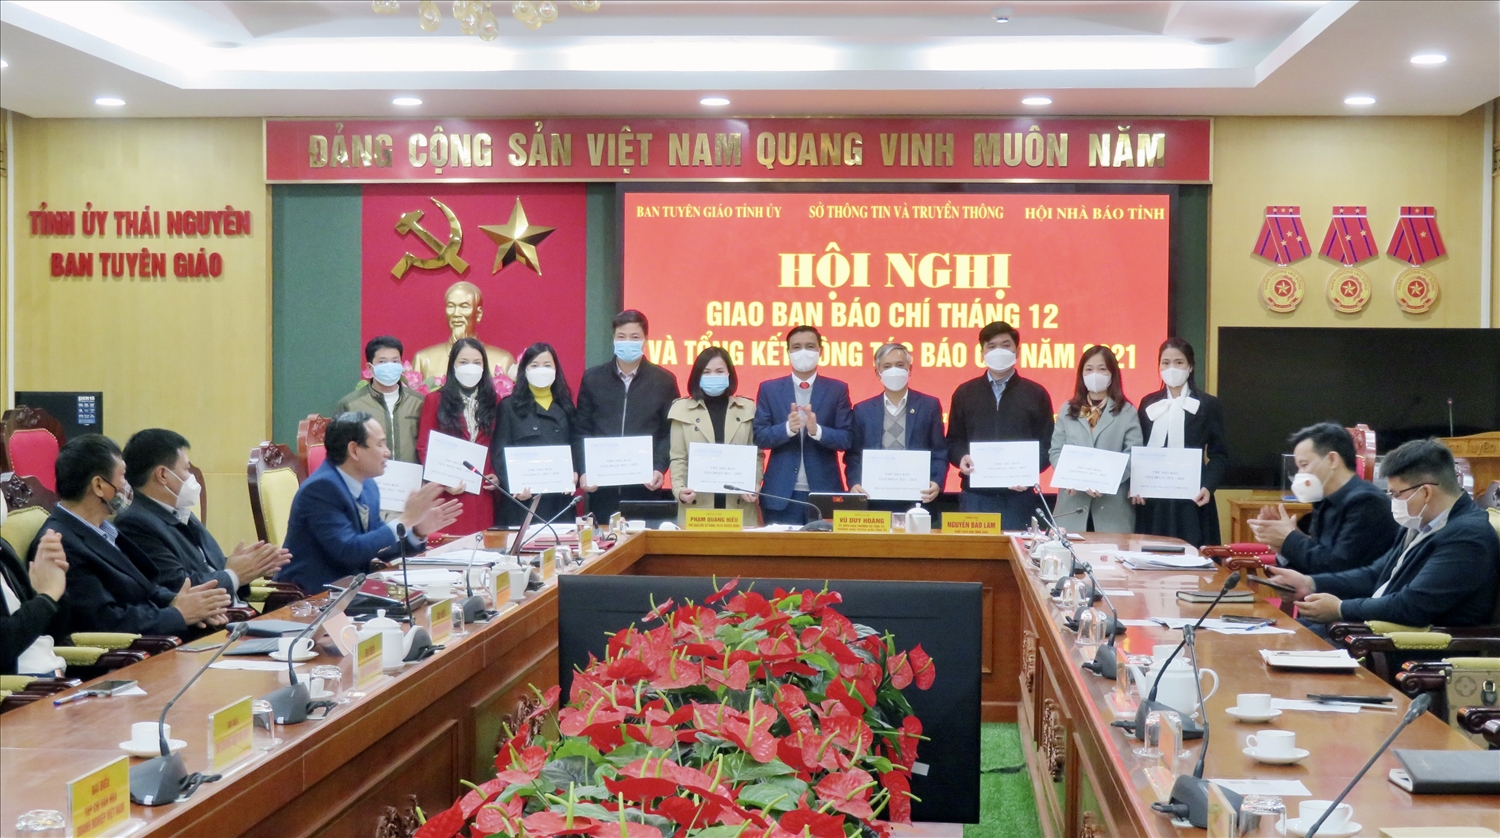 Trưởng Ban Tuyên giáo Tỉnh ủy Thái Nguyên Vũ Duy Hoàng trao Thẻ nhà báo cho đại diện các cơ quan báo chí, truyền thông của tỉnh